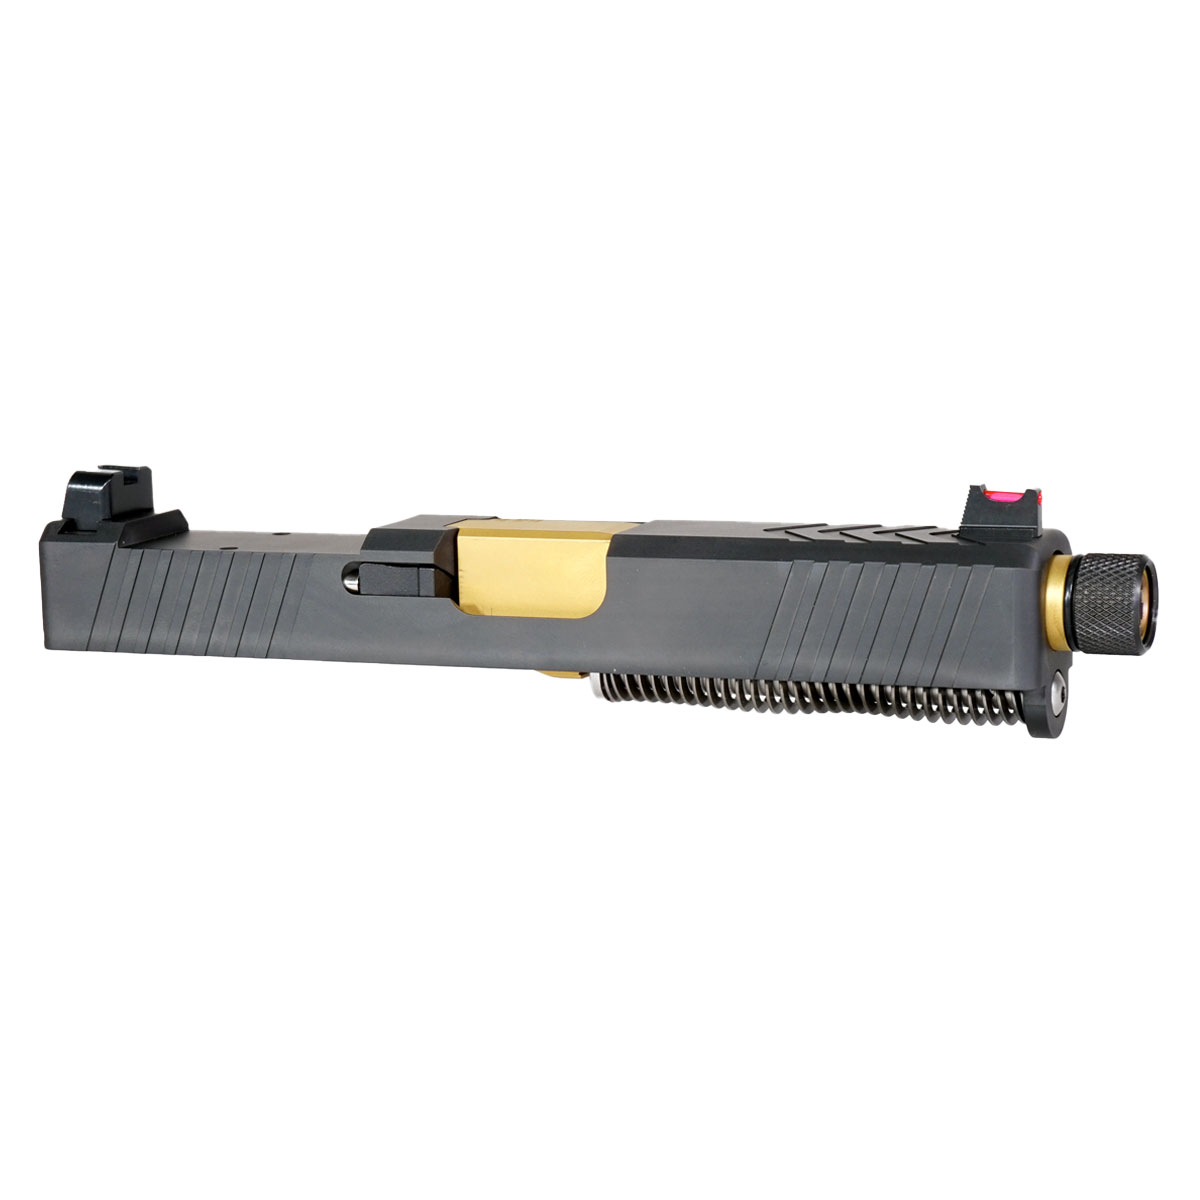 MMC 'Backmarker' 9mm Complete Slide Kit - Glock 19 Gen 1-3 Compatible